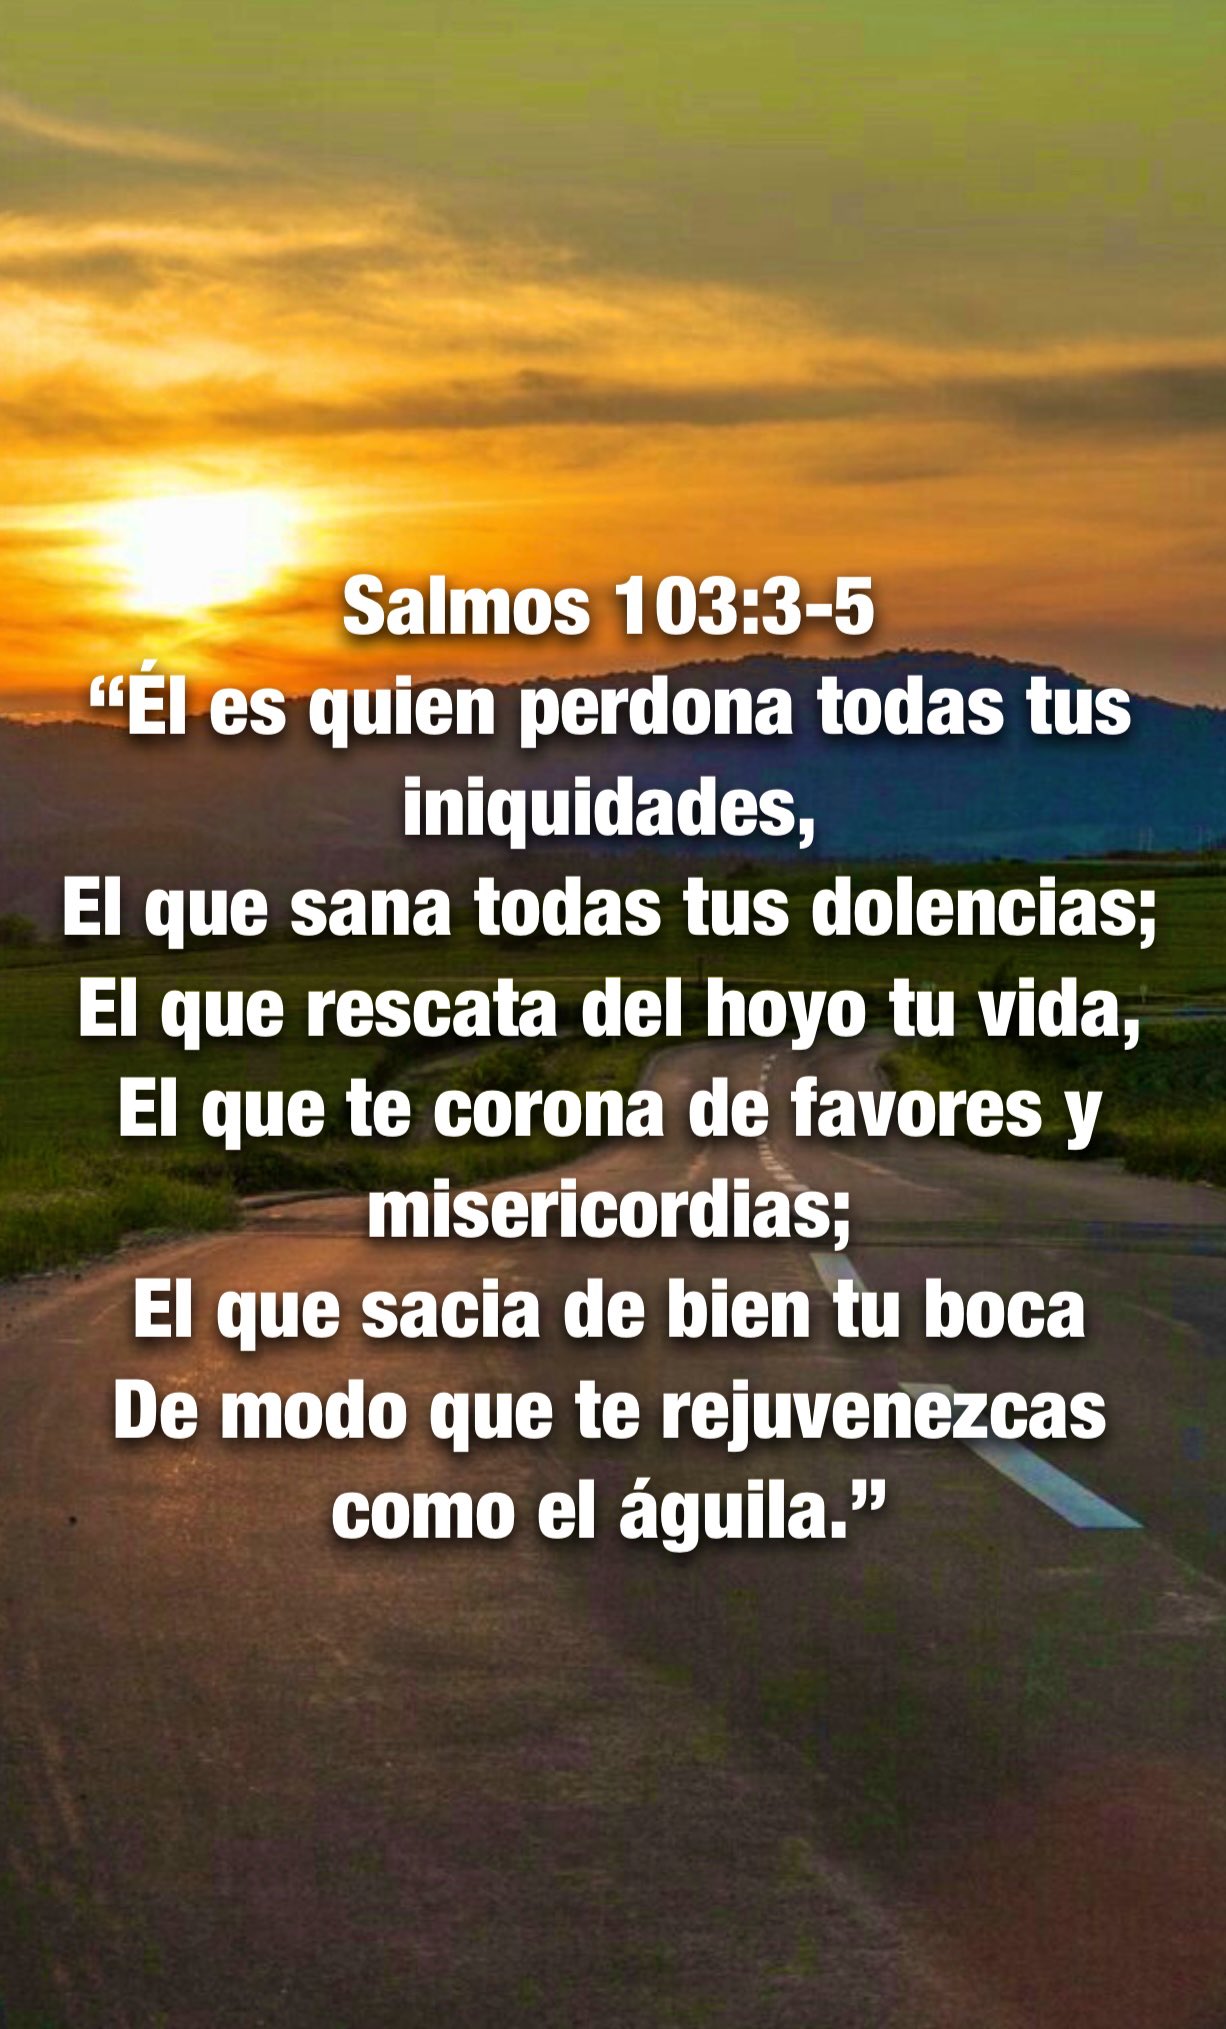 Carmen Lopez on X: Salmos 103:1-2 “Bendice, alma mía, a Jehová, Y